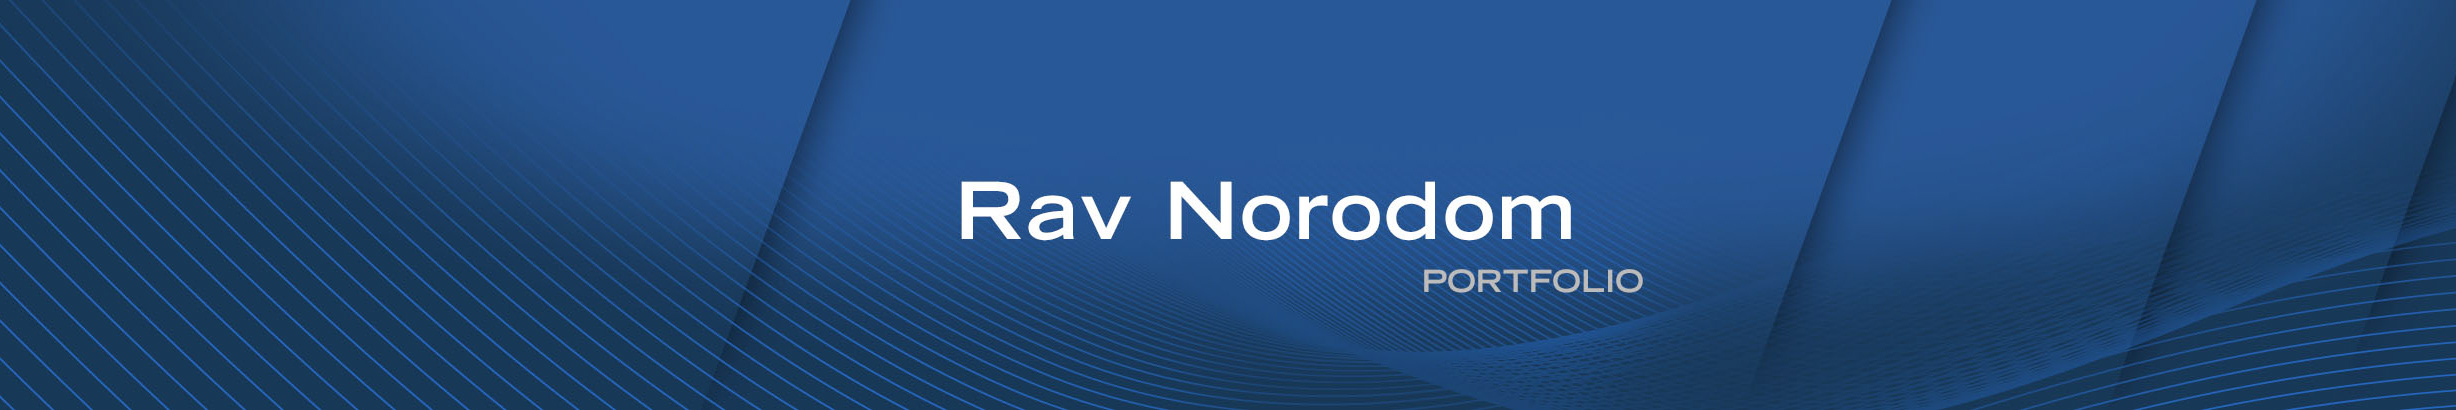 Rav Norodoms profilbanner